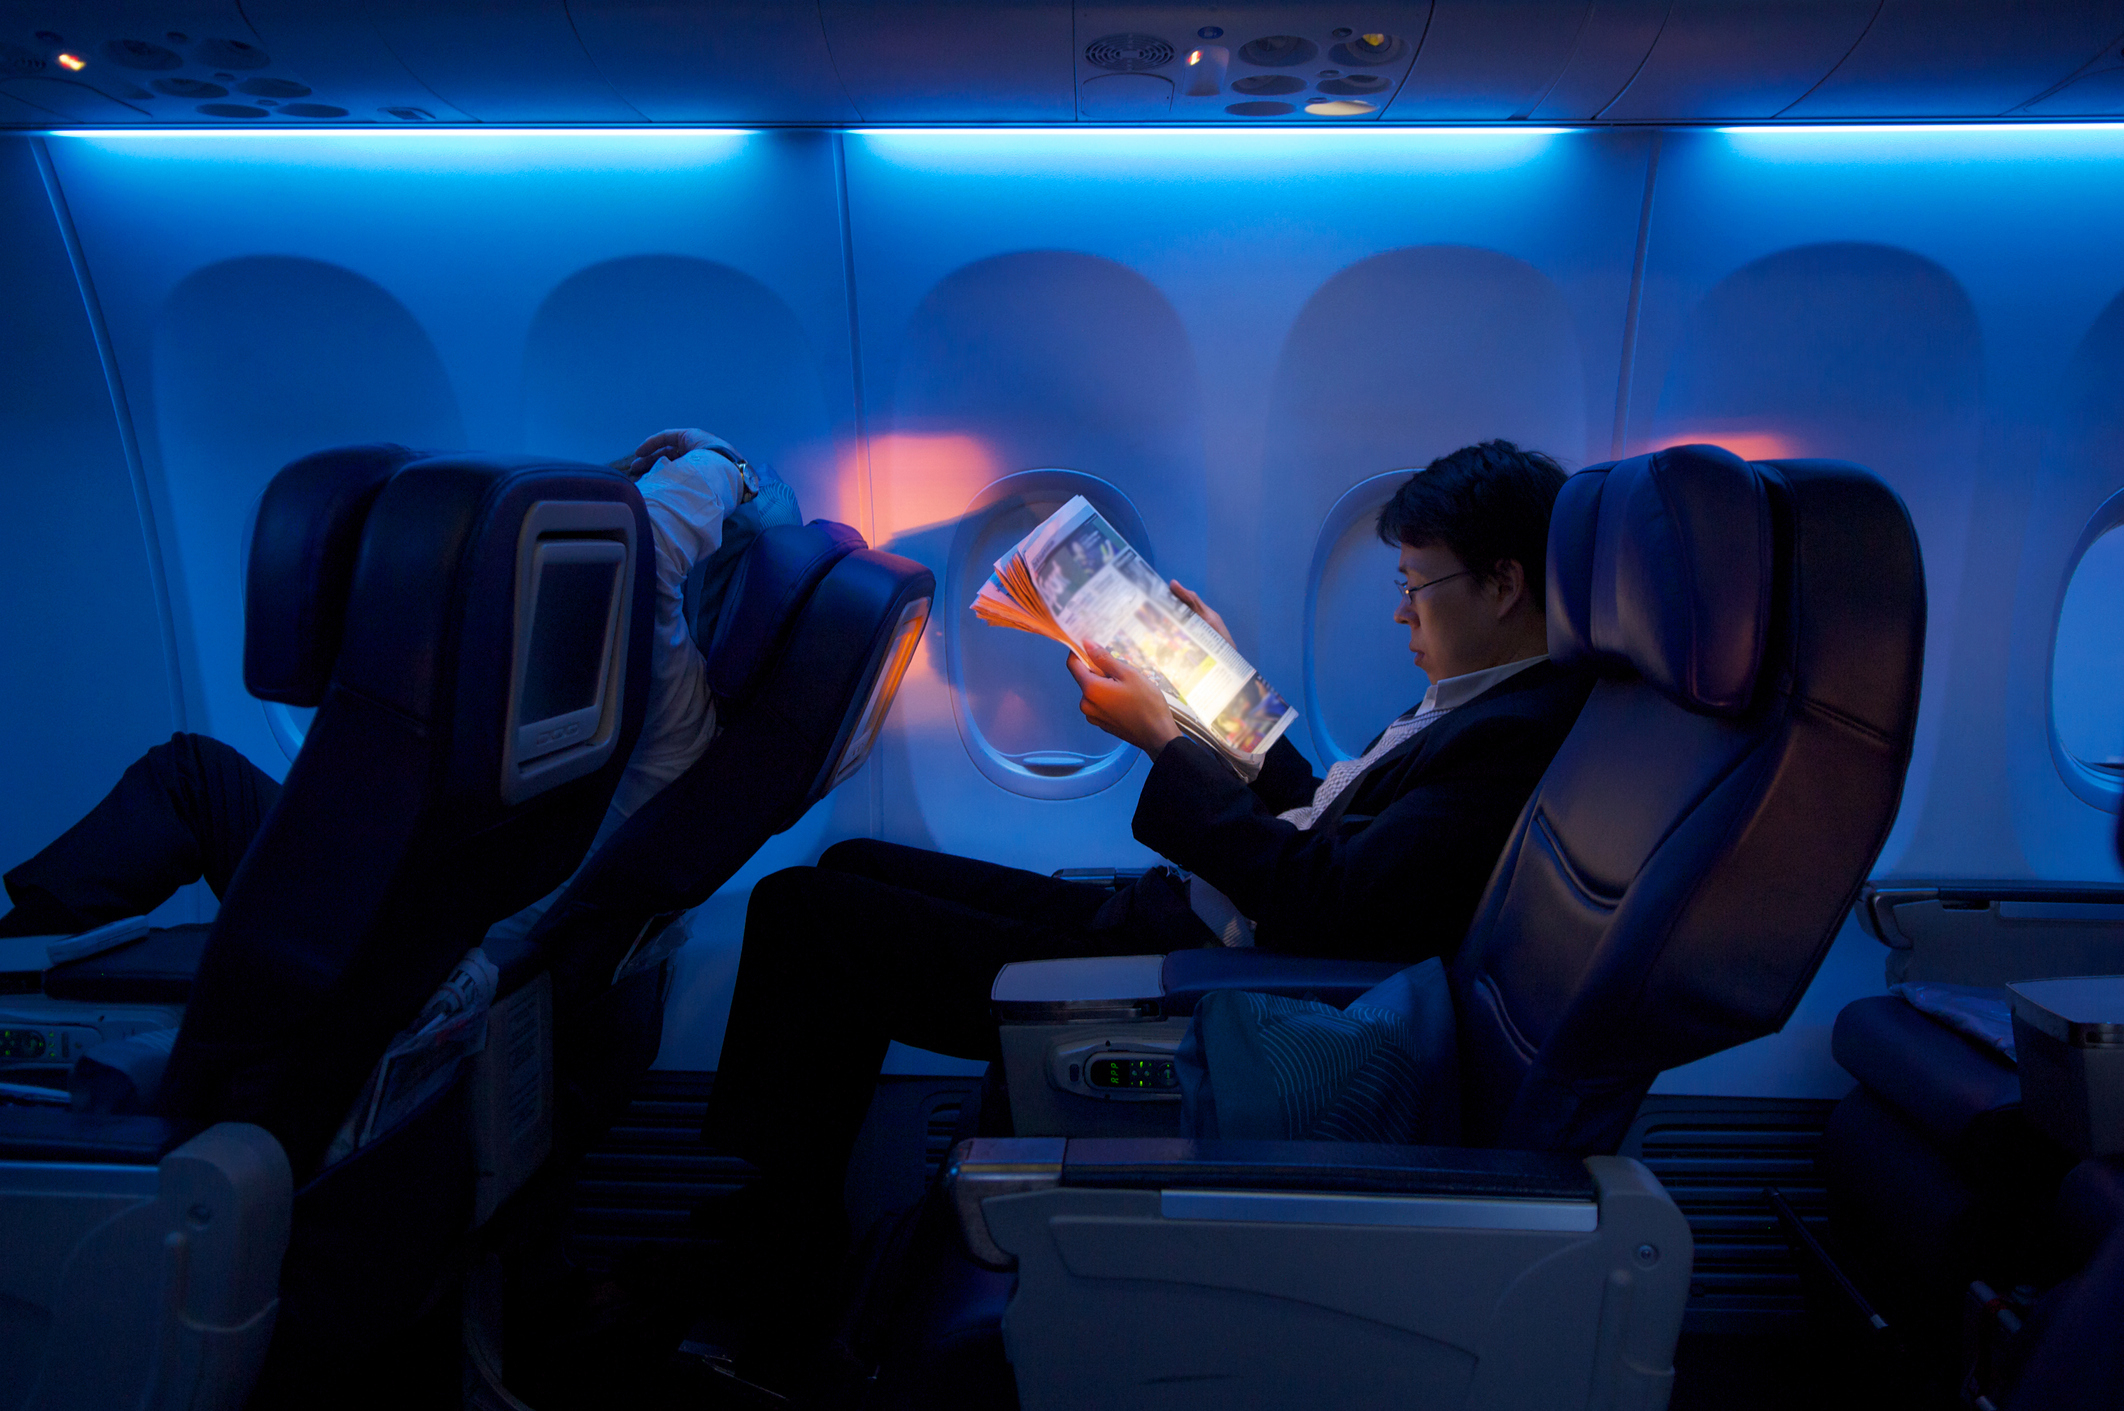 A man is enjoying his business class flight